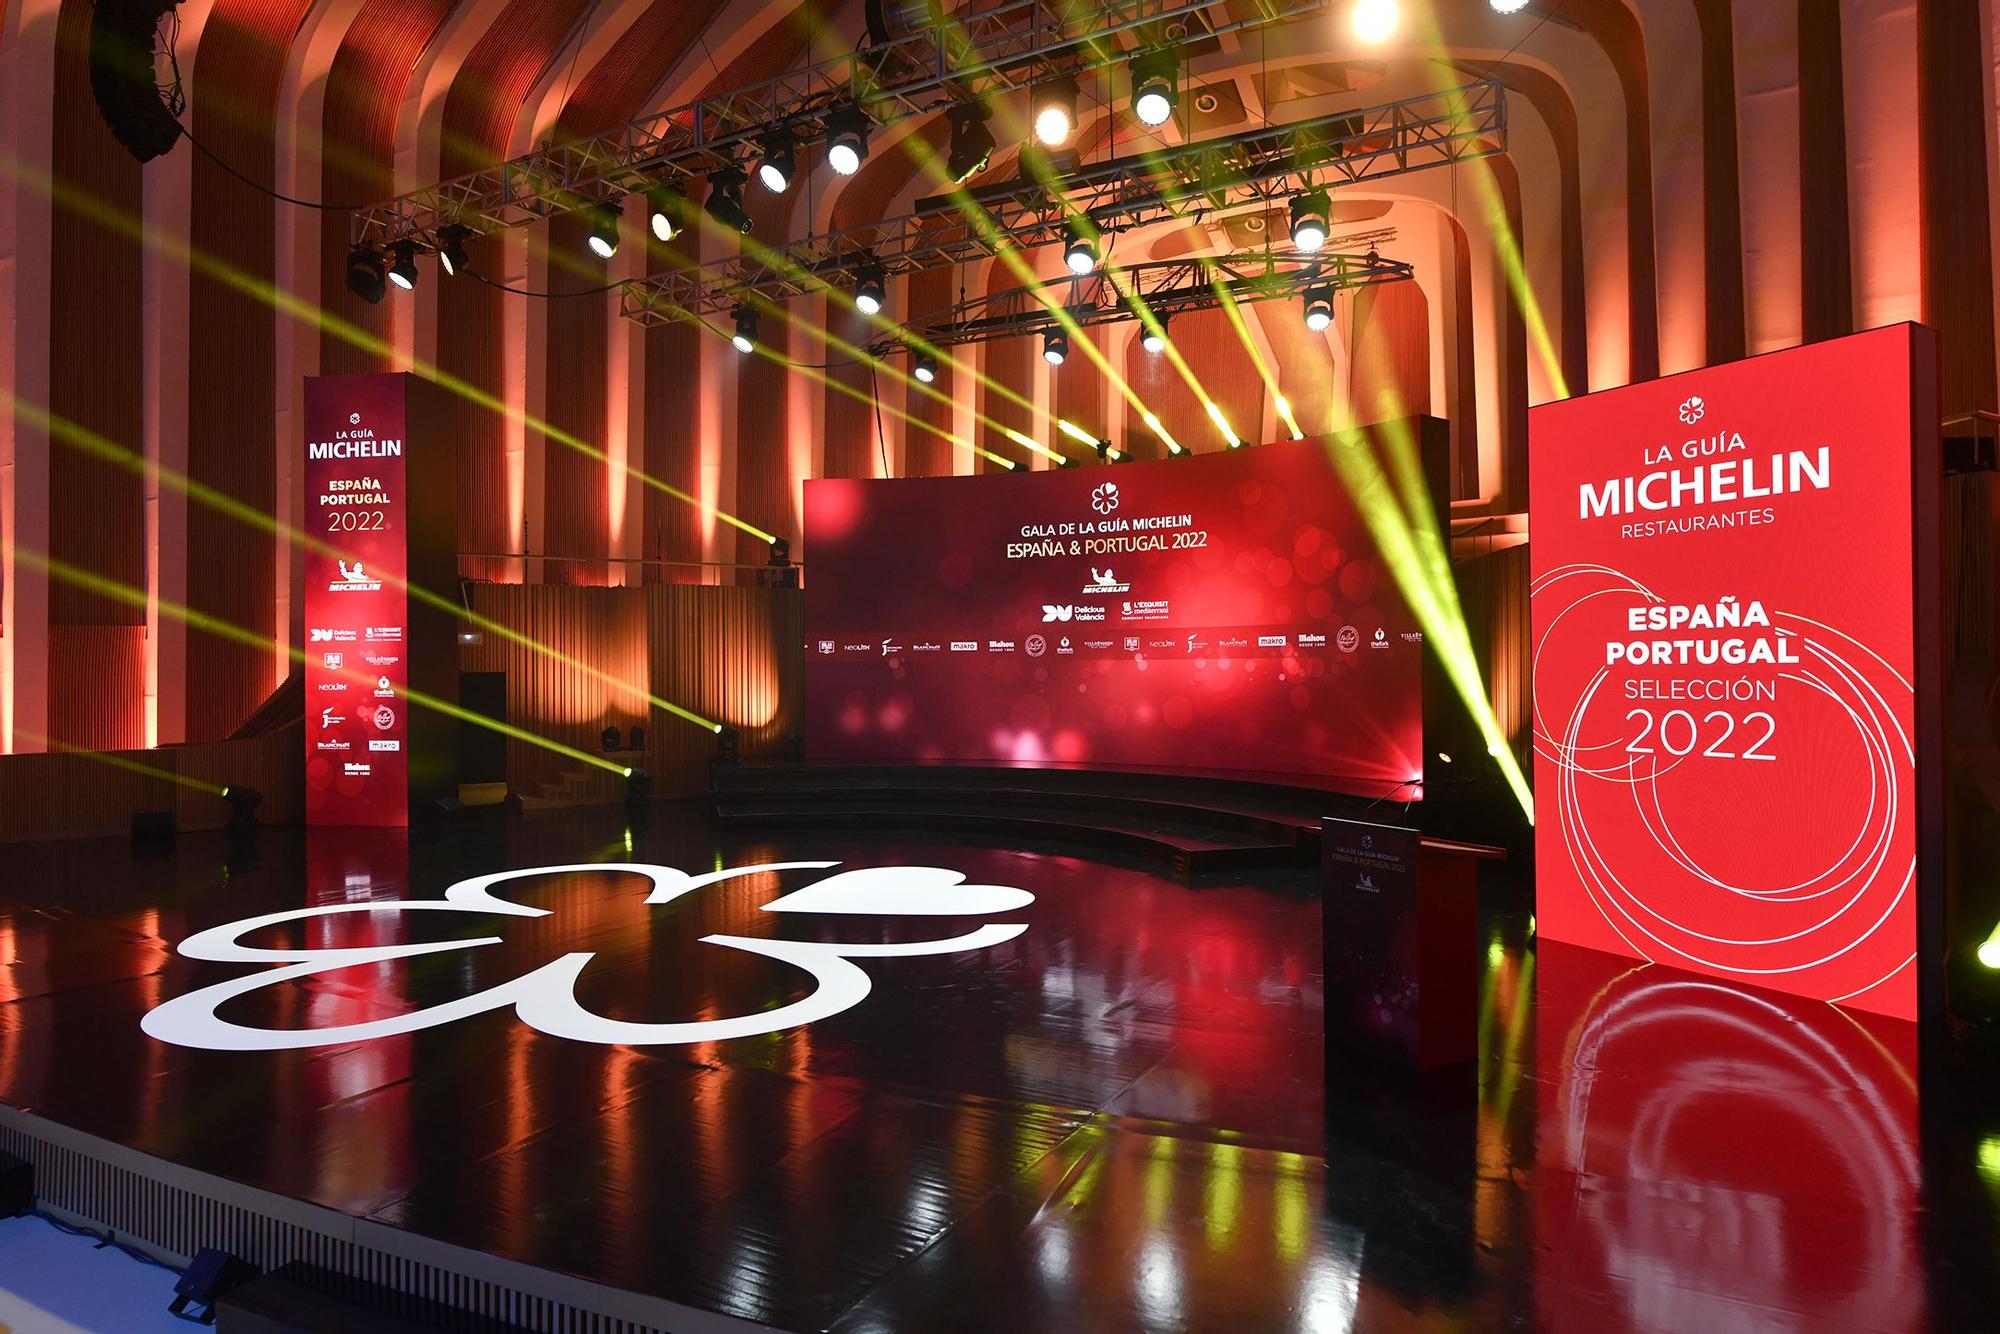 Gala de la Guia Michelin 2022